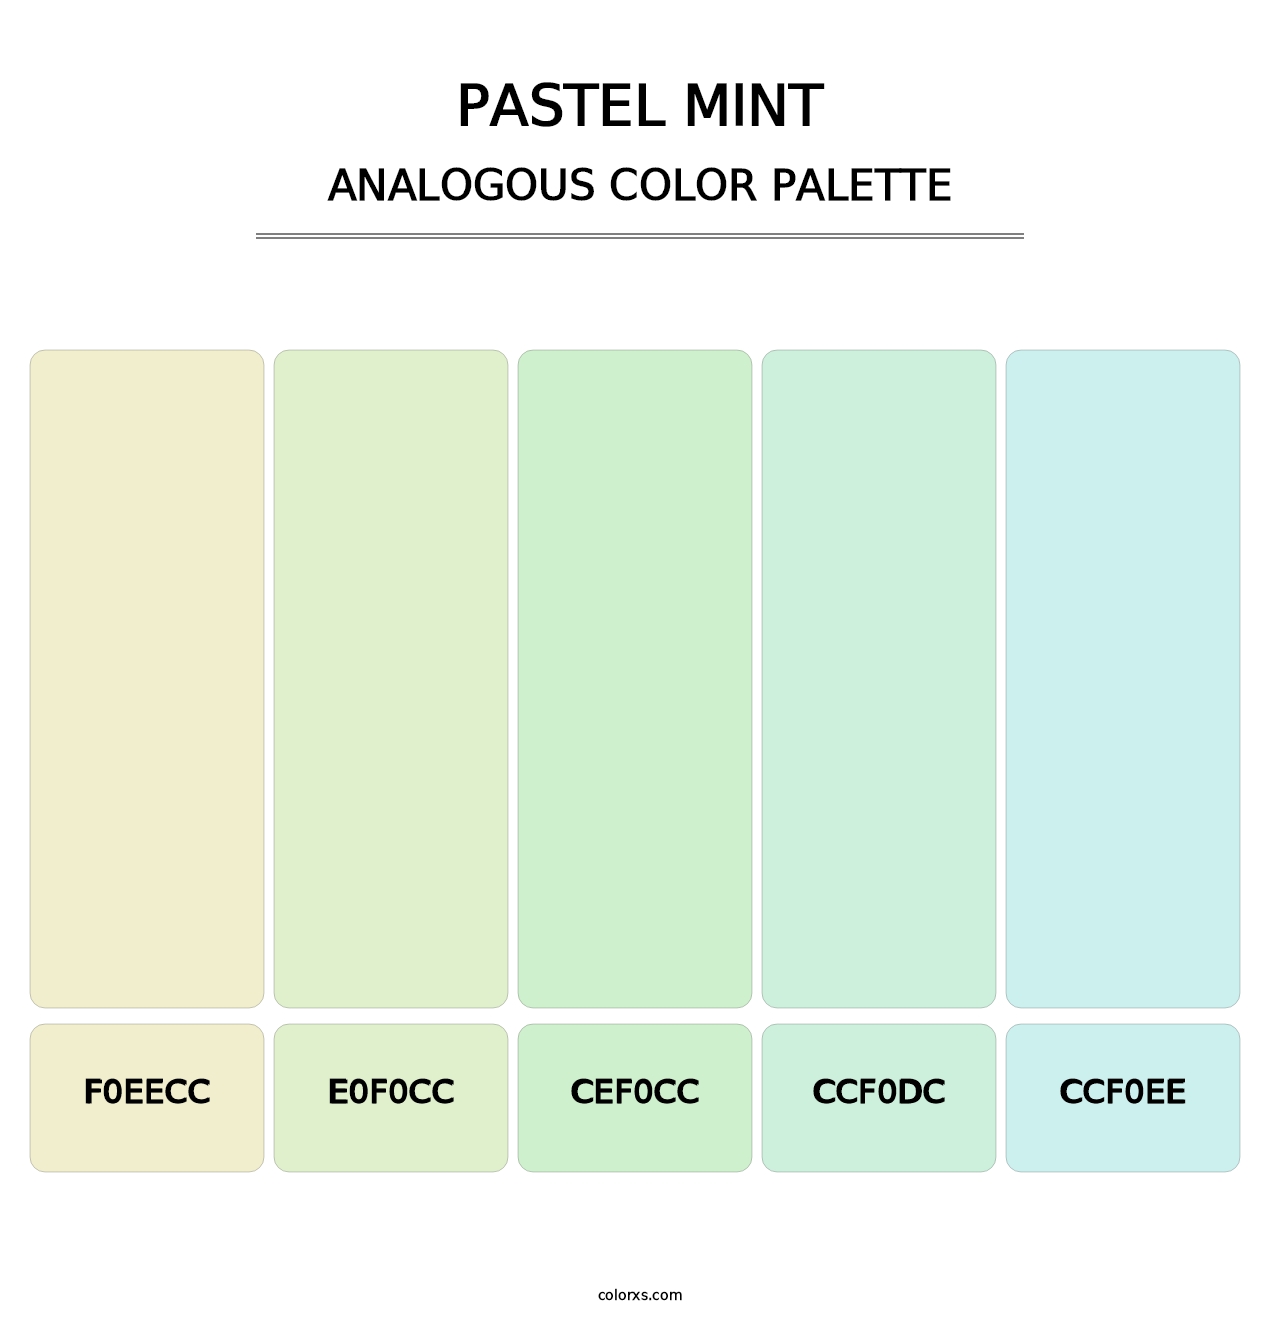 Pastel Mint - Analogous Color Palette